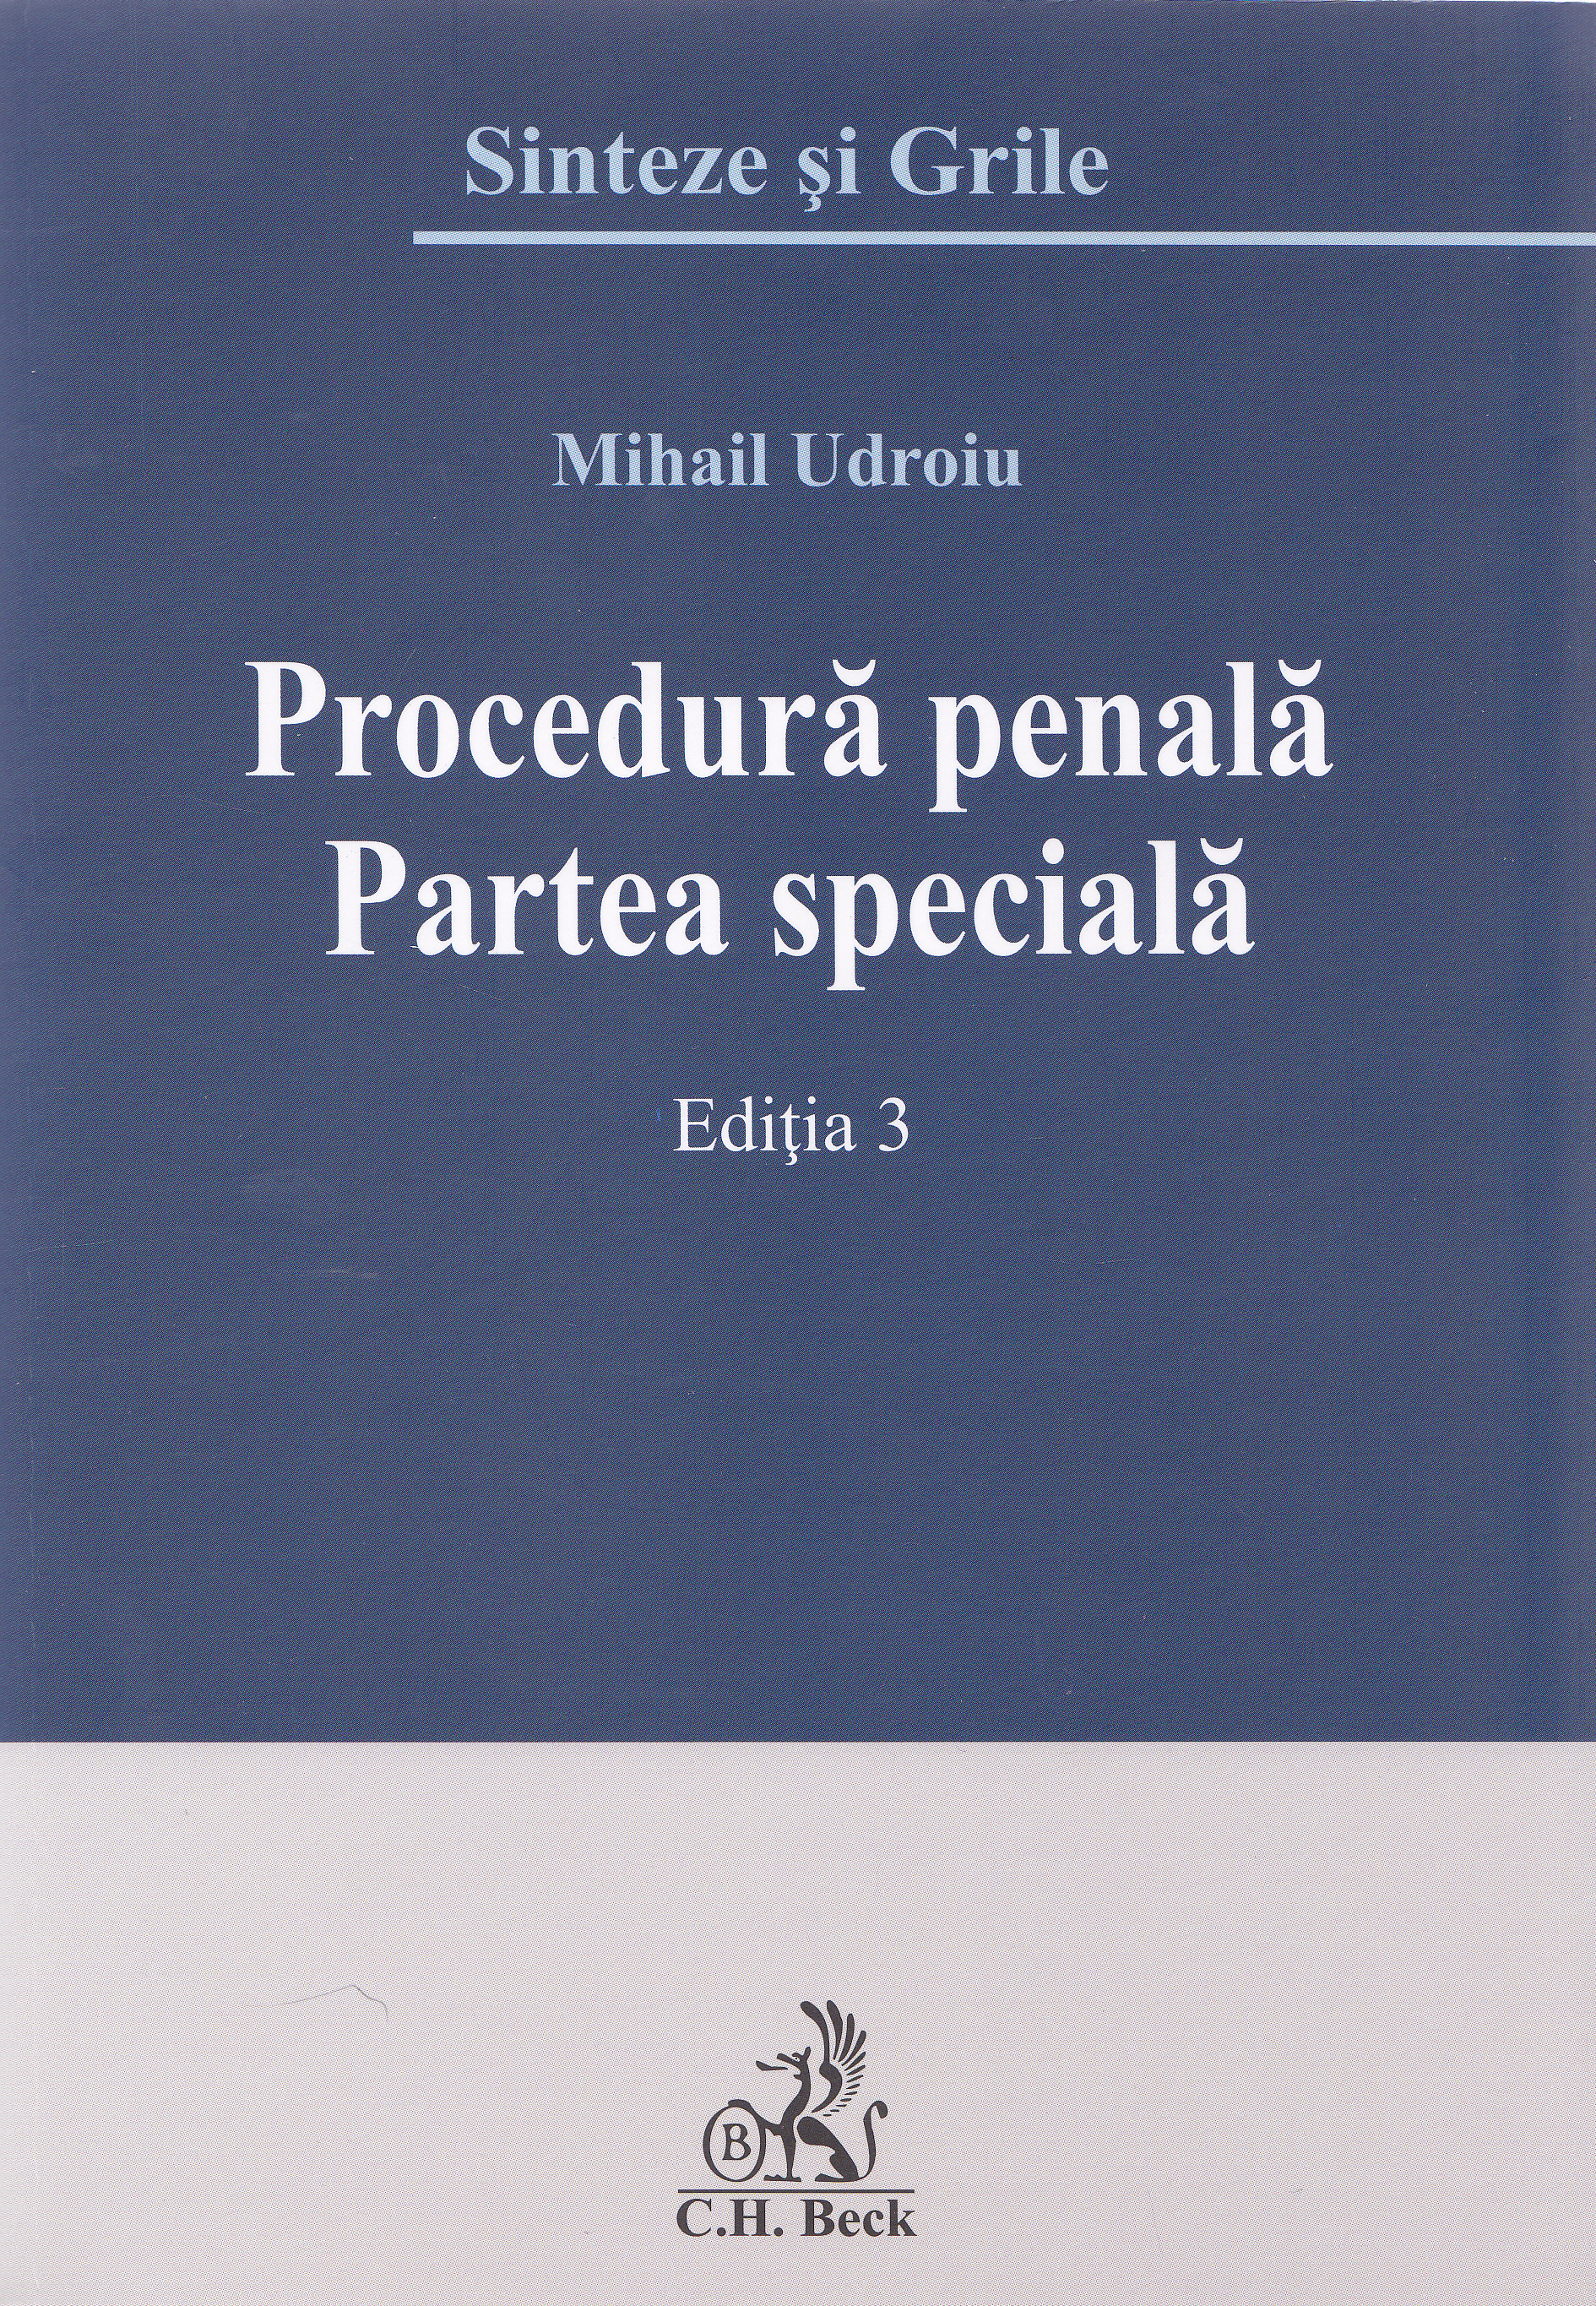 Procedura penala. Partea speciala ed.3. Sinteze si grile - Mihail Udroiu